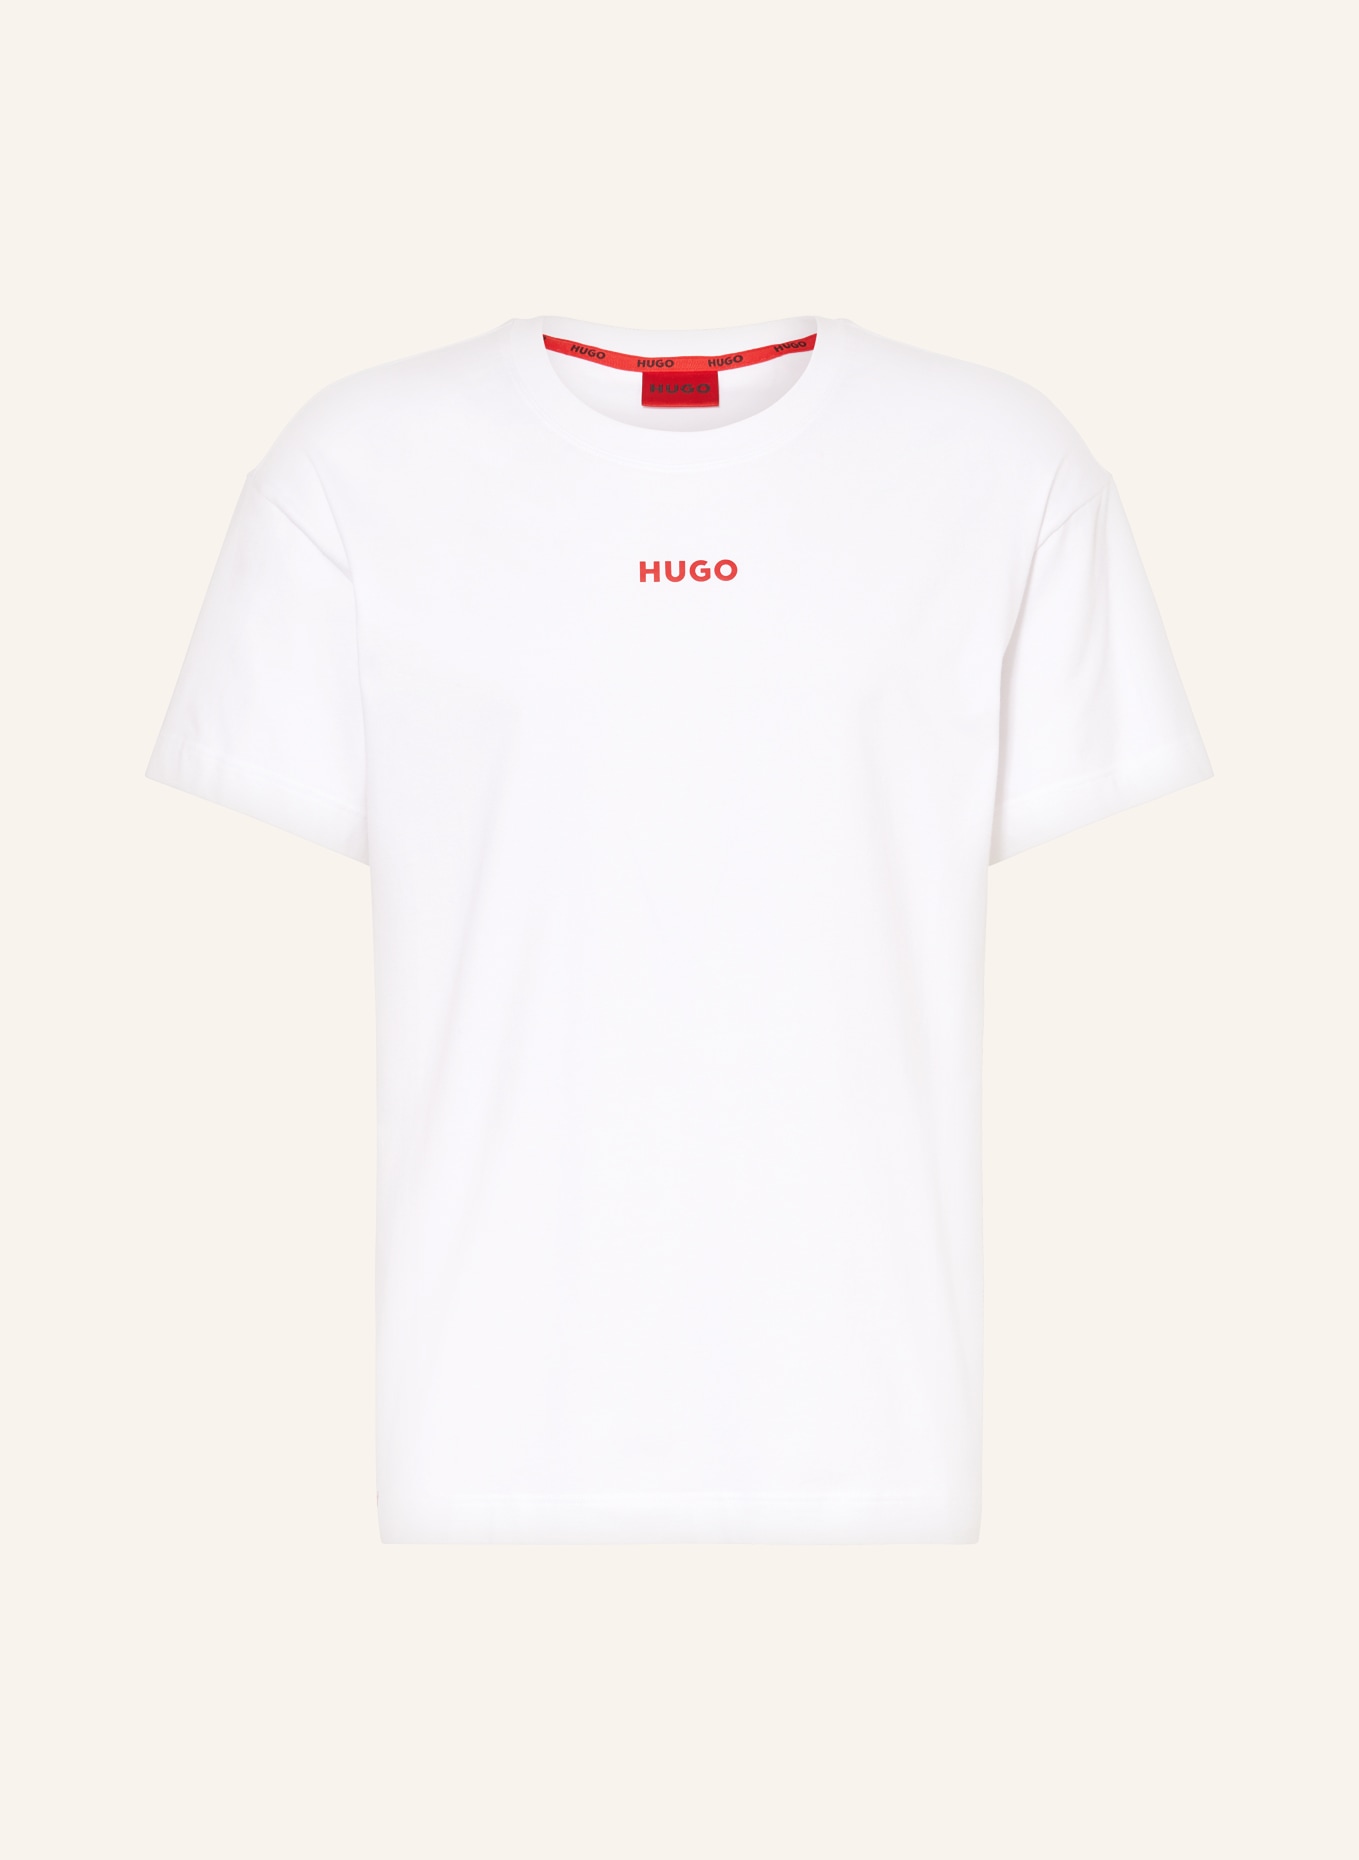 HUGO Pajama shirt LINKED, Color: WHITE (Image 1)